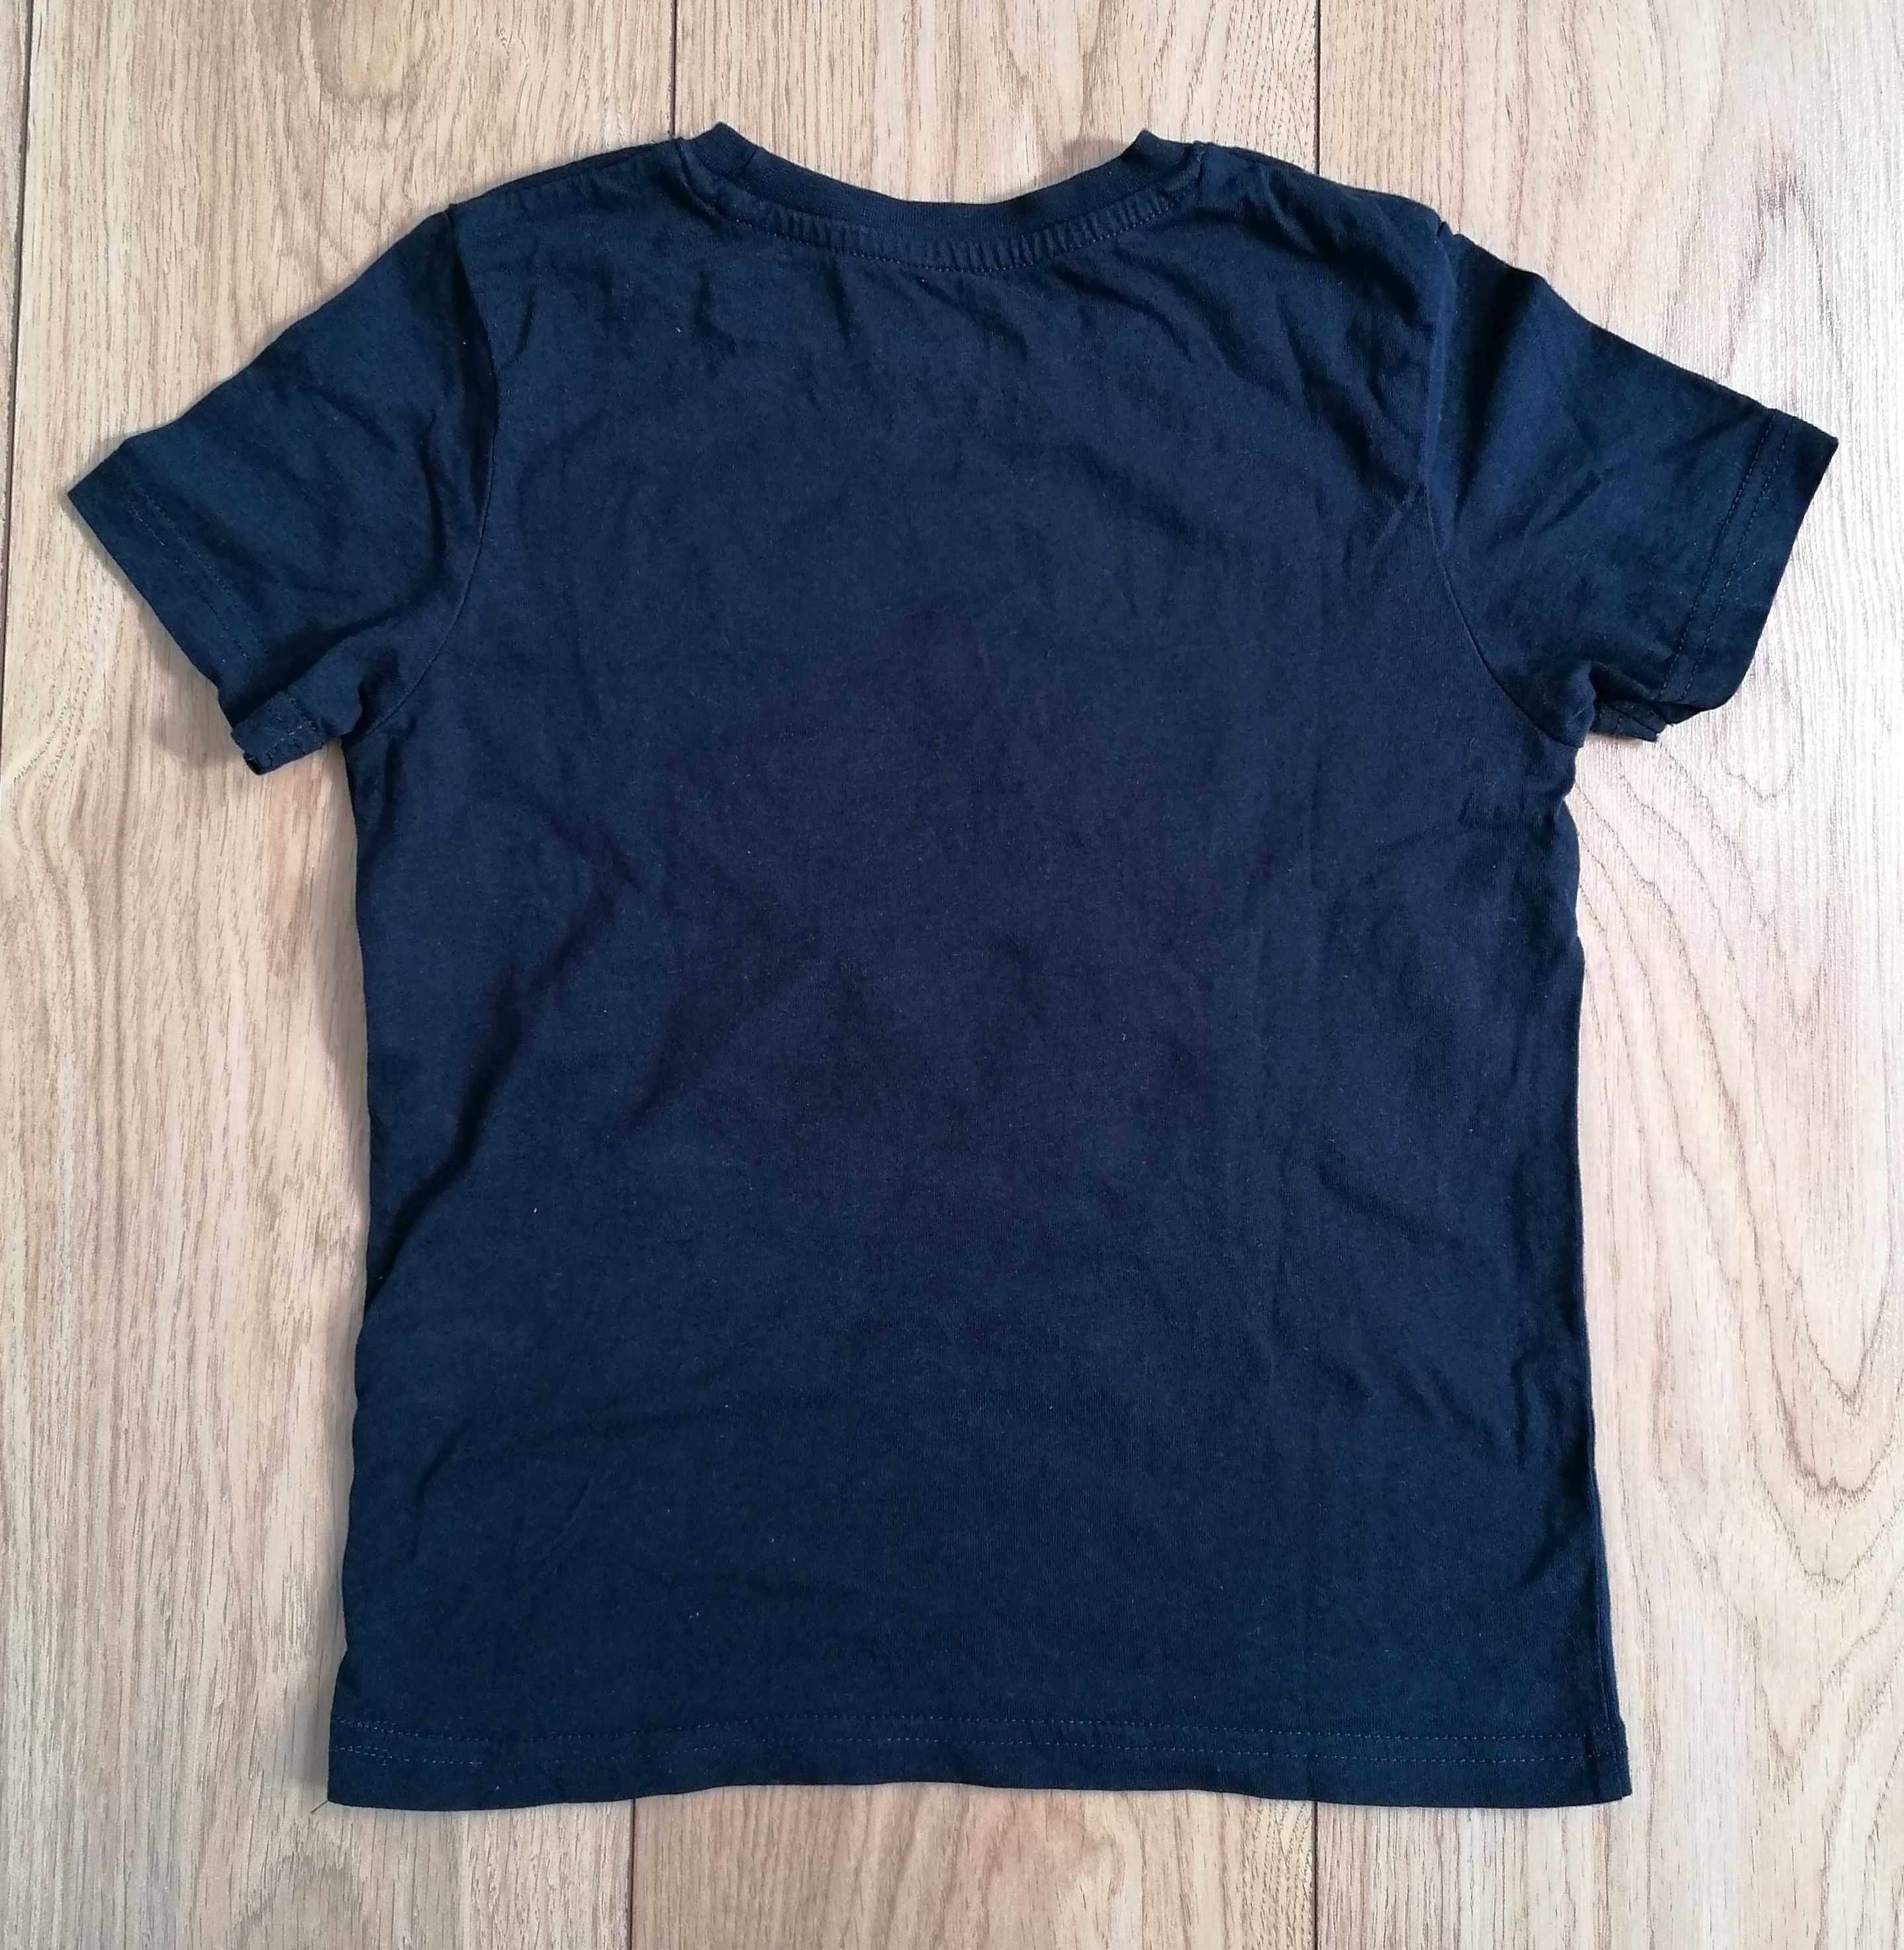 T-shirt chłopięcy Pepperts rozmiar 122-128